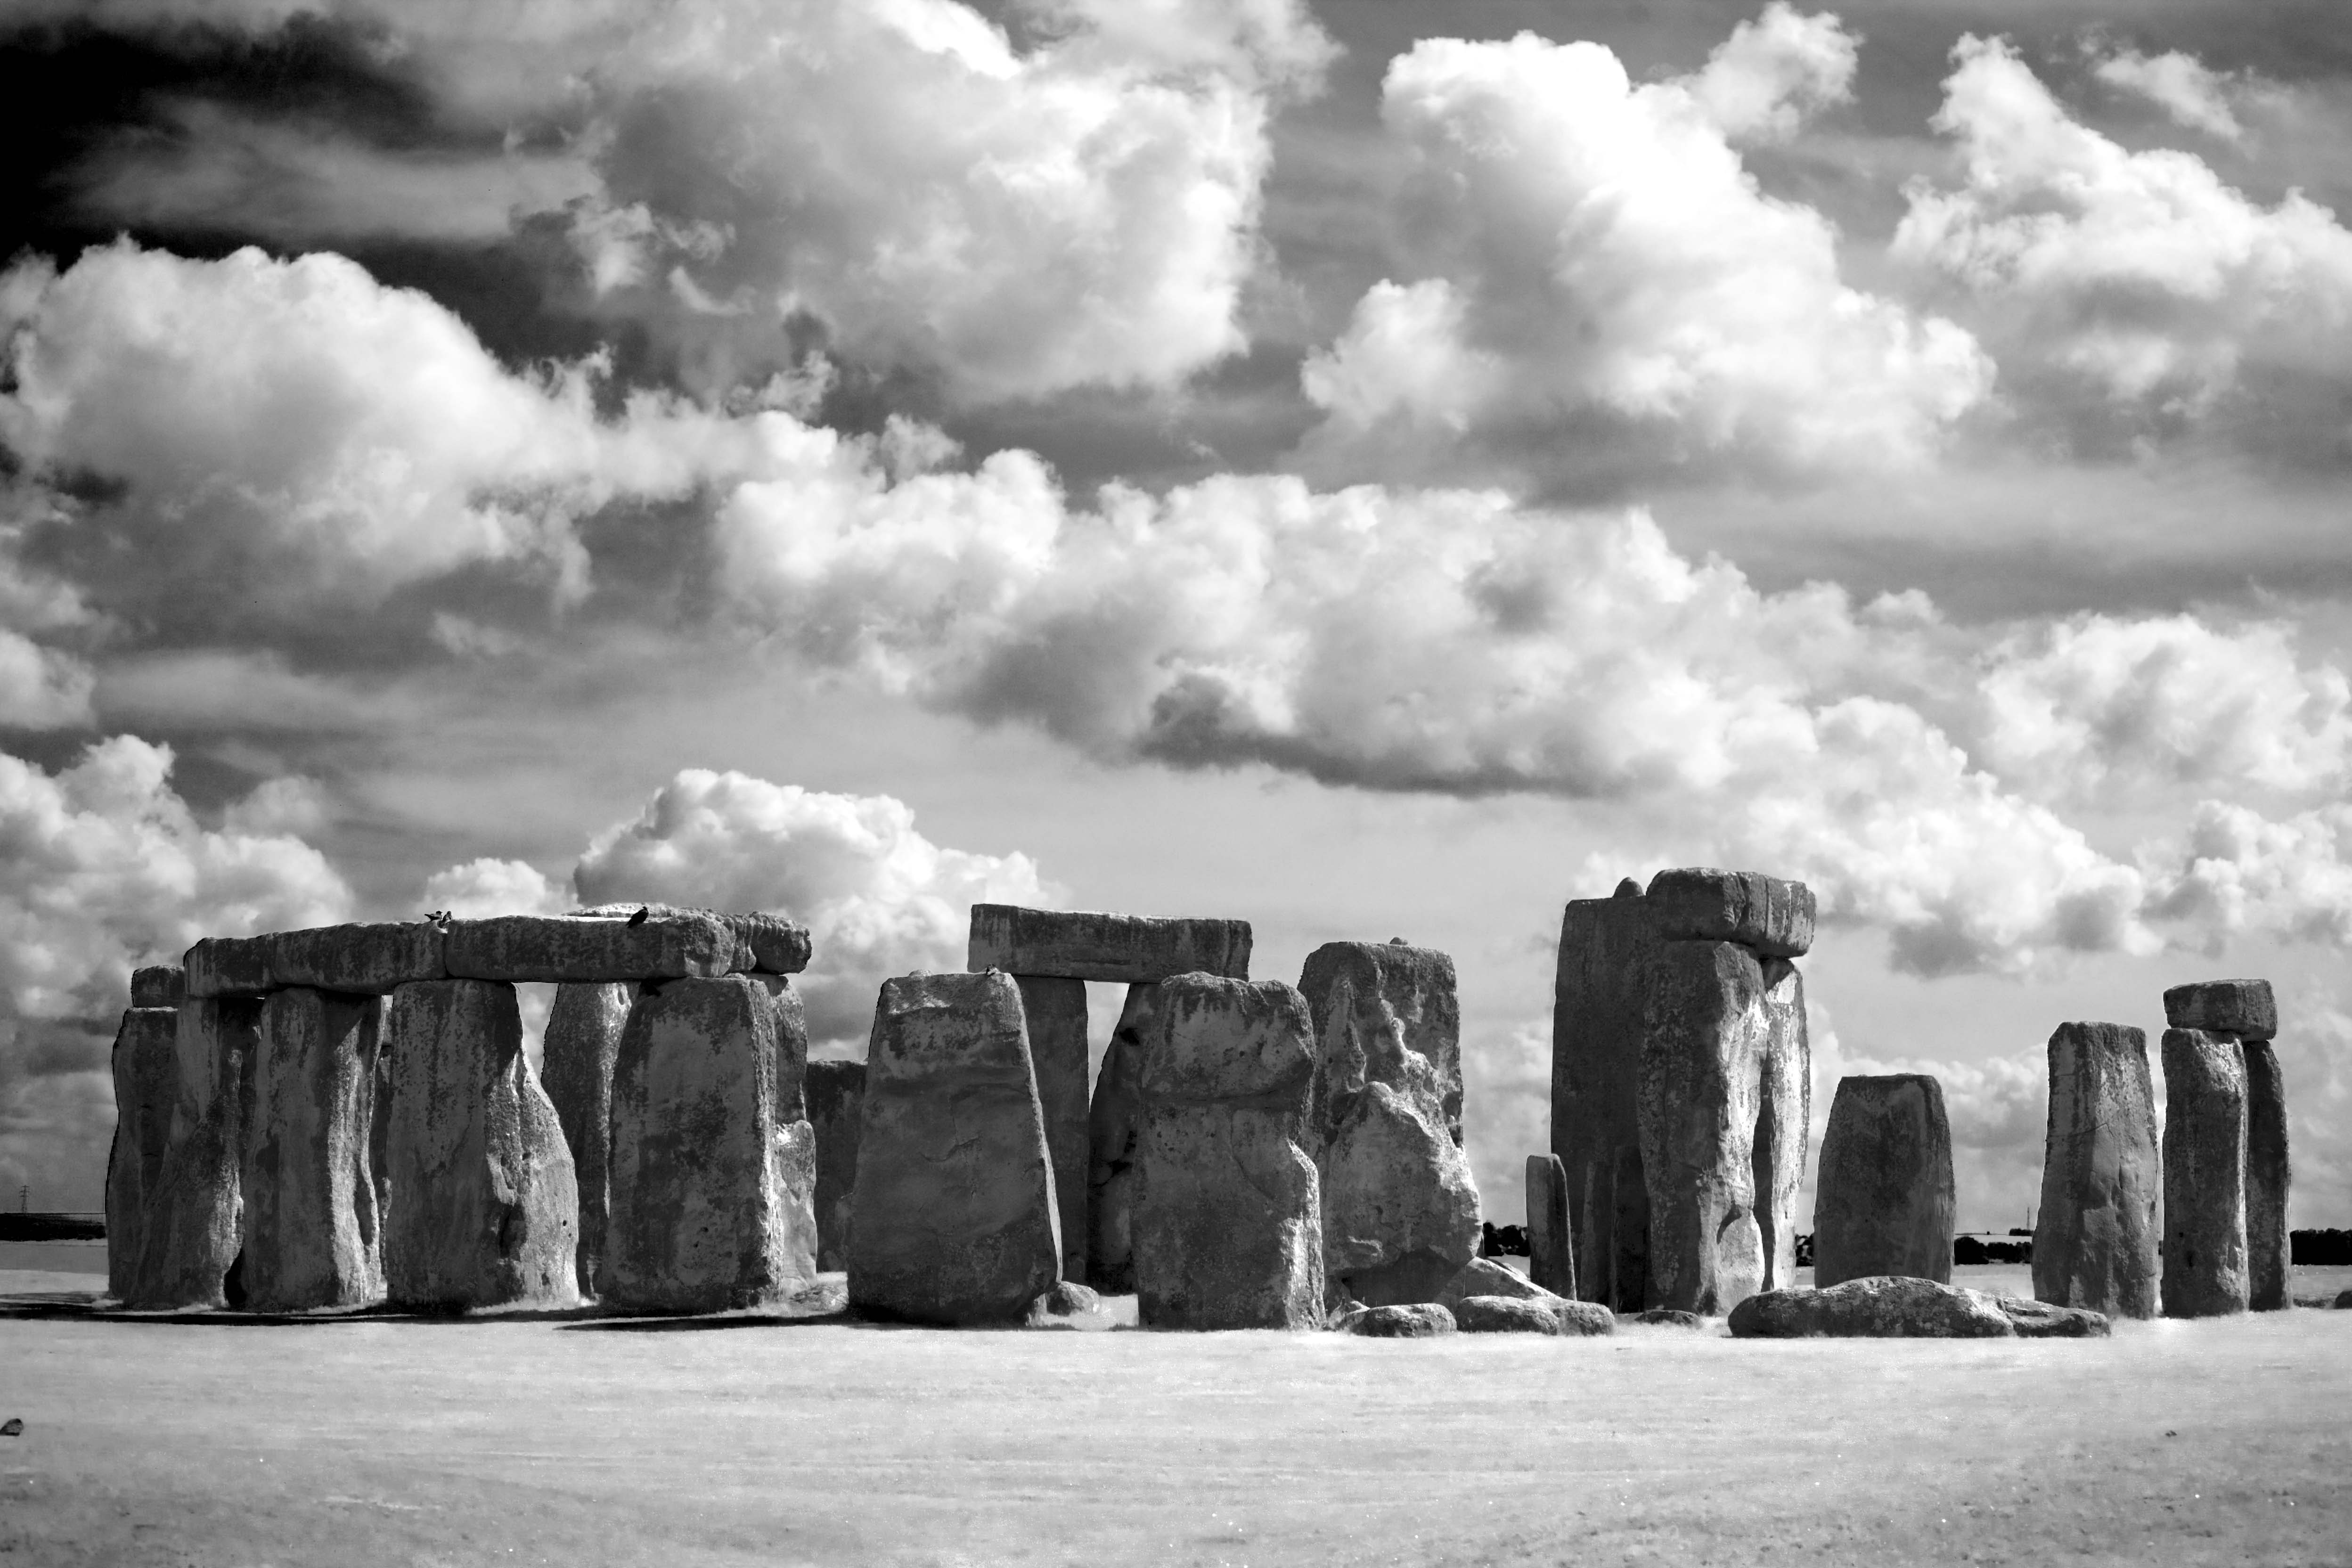 フリー画像 人工風景 建造物 建築物 ストーンヘンジ 雲の風景 イギリス風景 モノクロ写真 世界遺産 ユネスコ フリー素材 画像素材なら 無料 フリー写真素材のフリーフォト